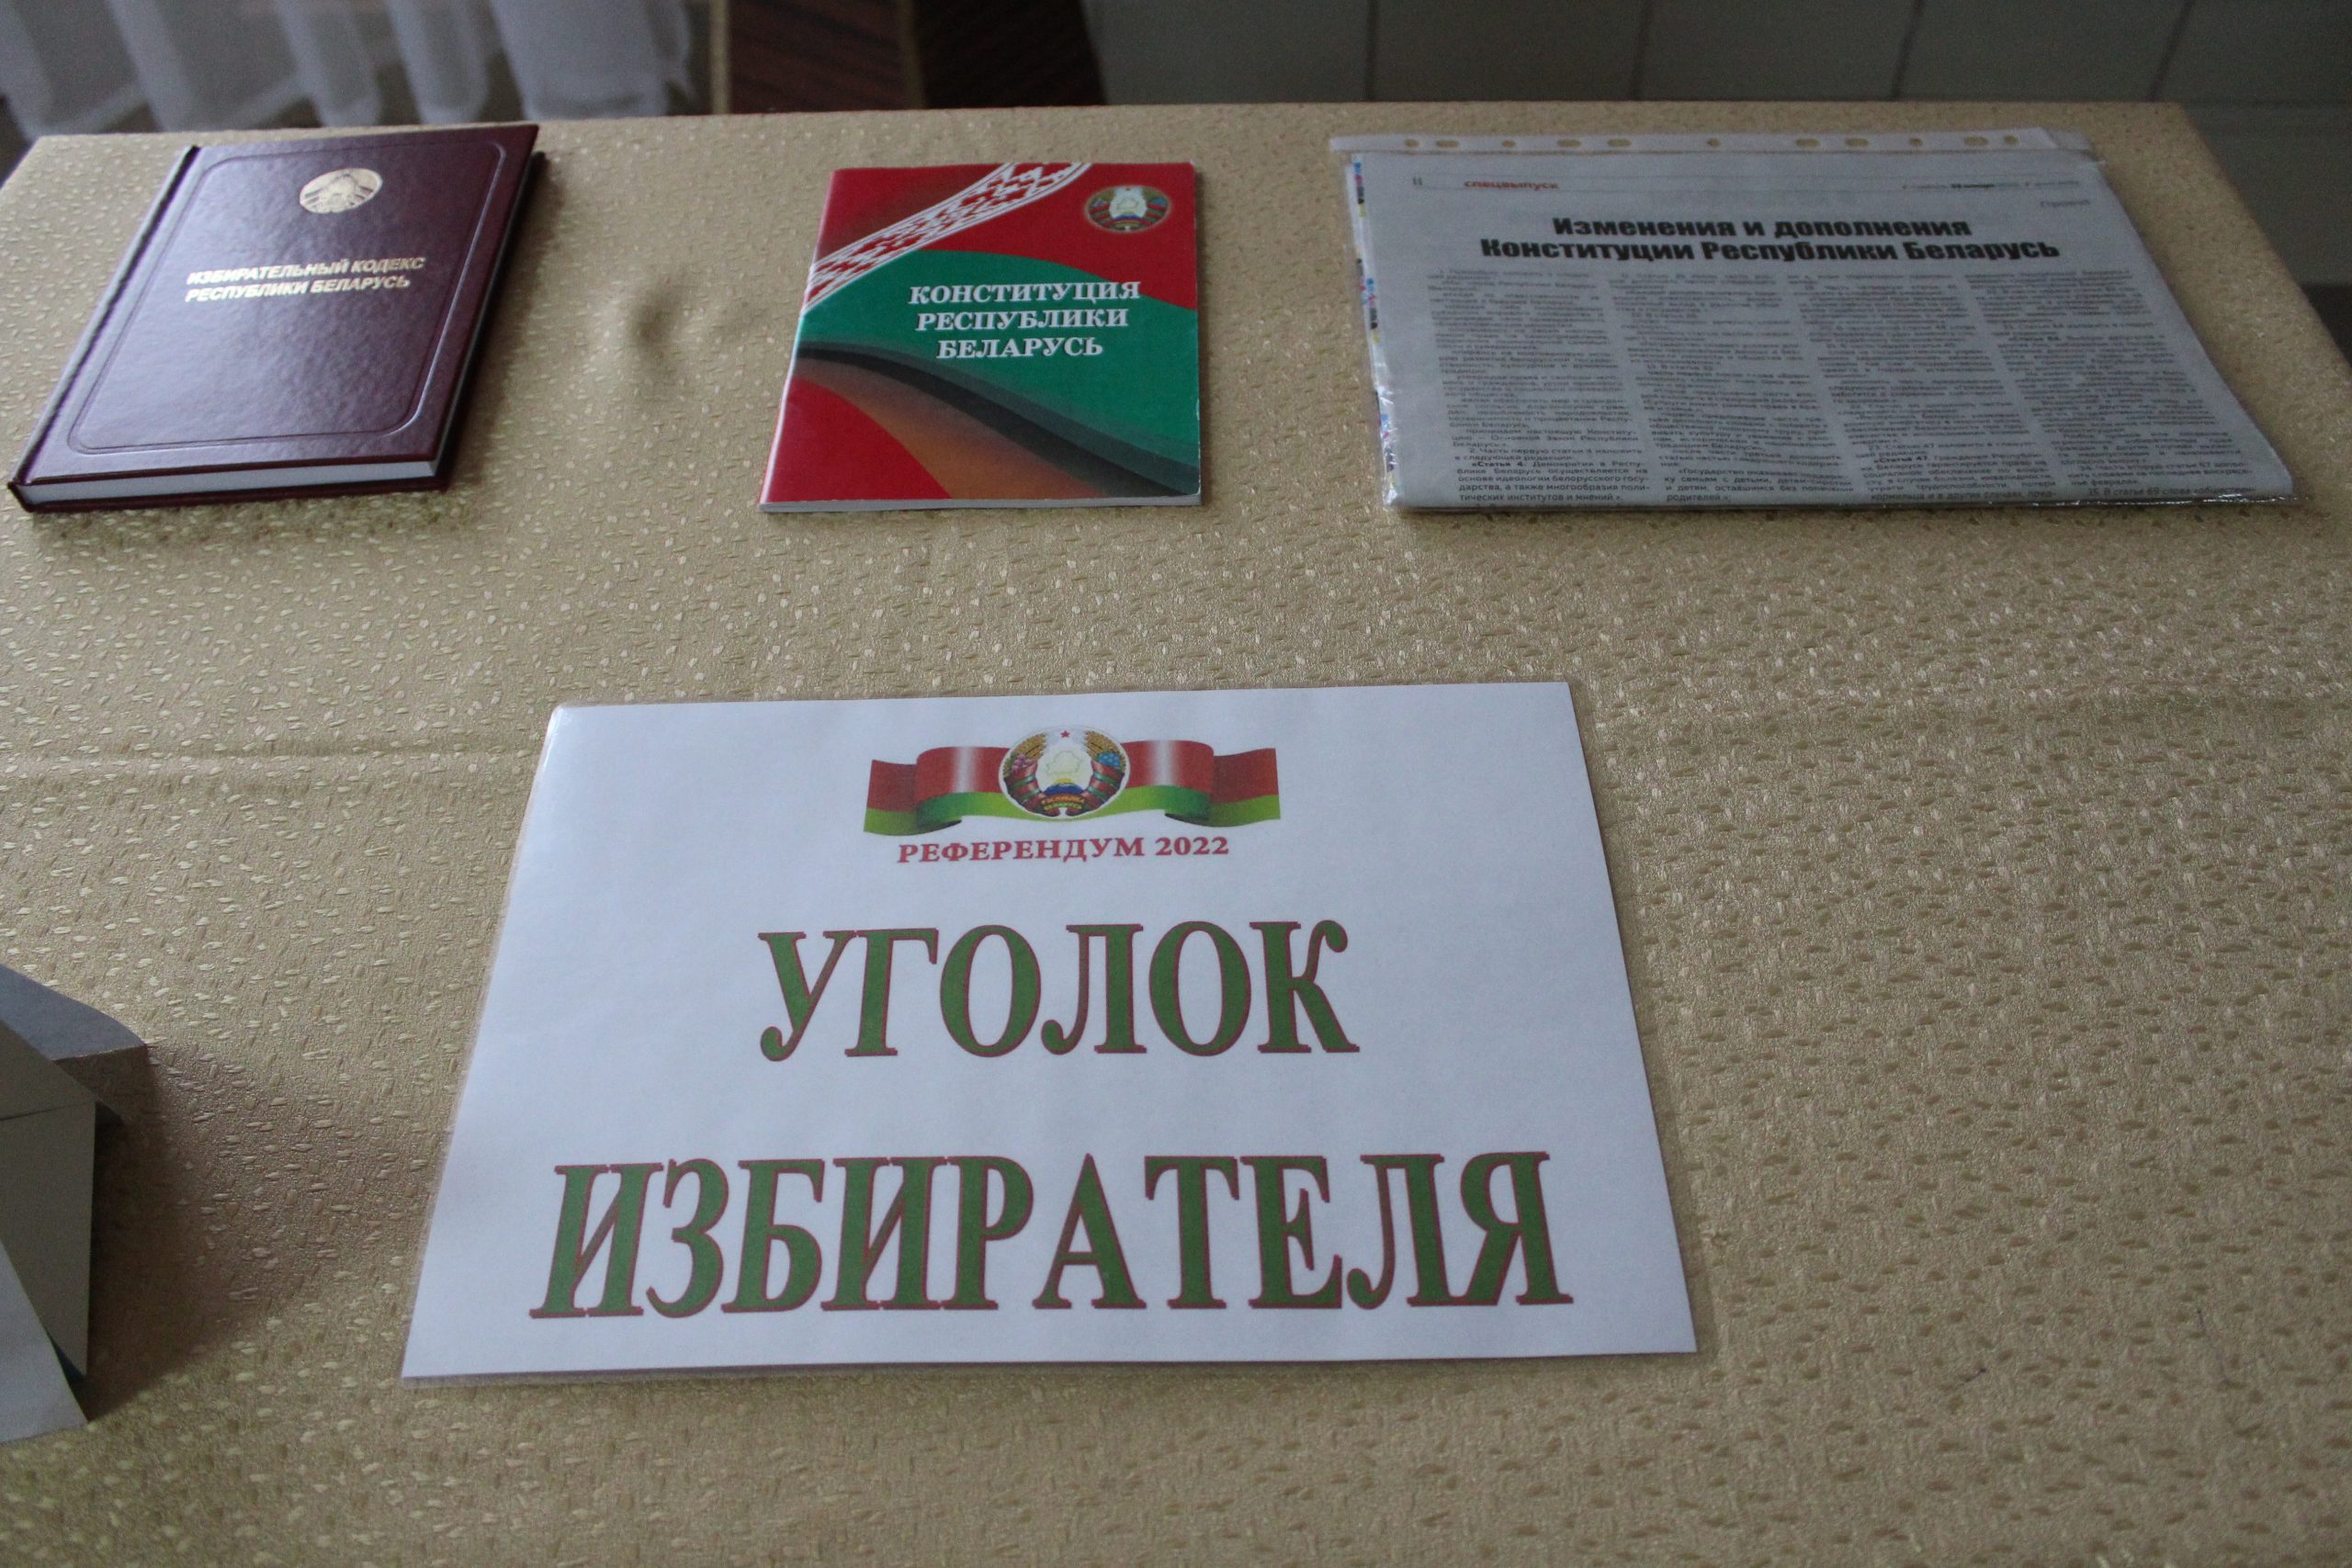 Сегодня, в Беларуси стартовало досрочное голосование на референдуме по Конституции